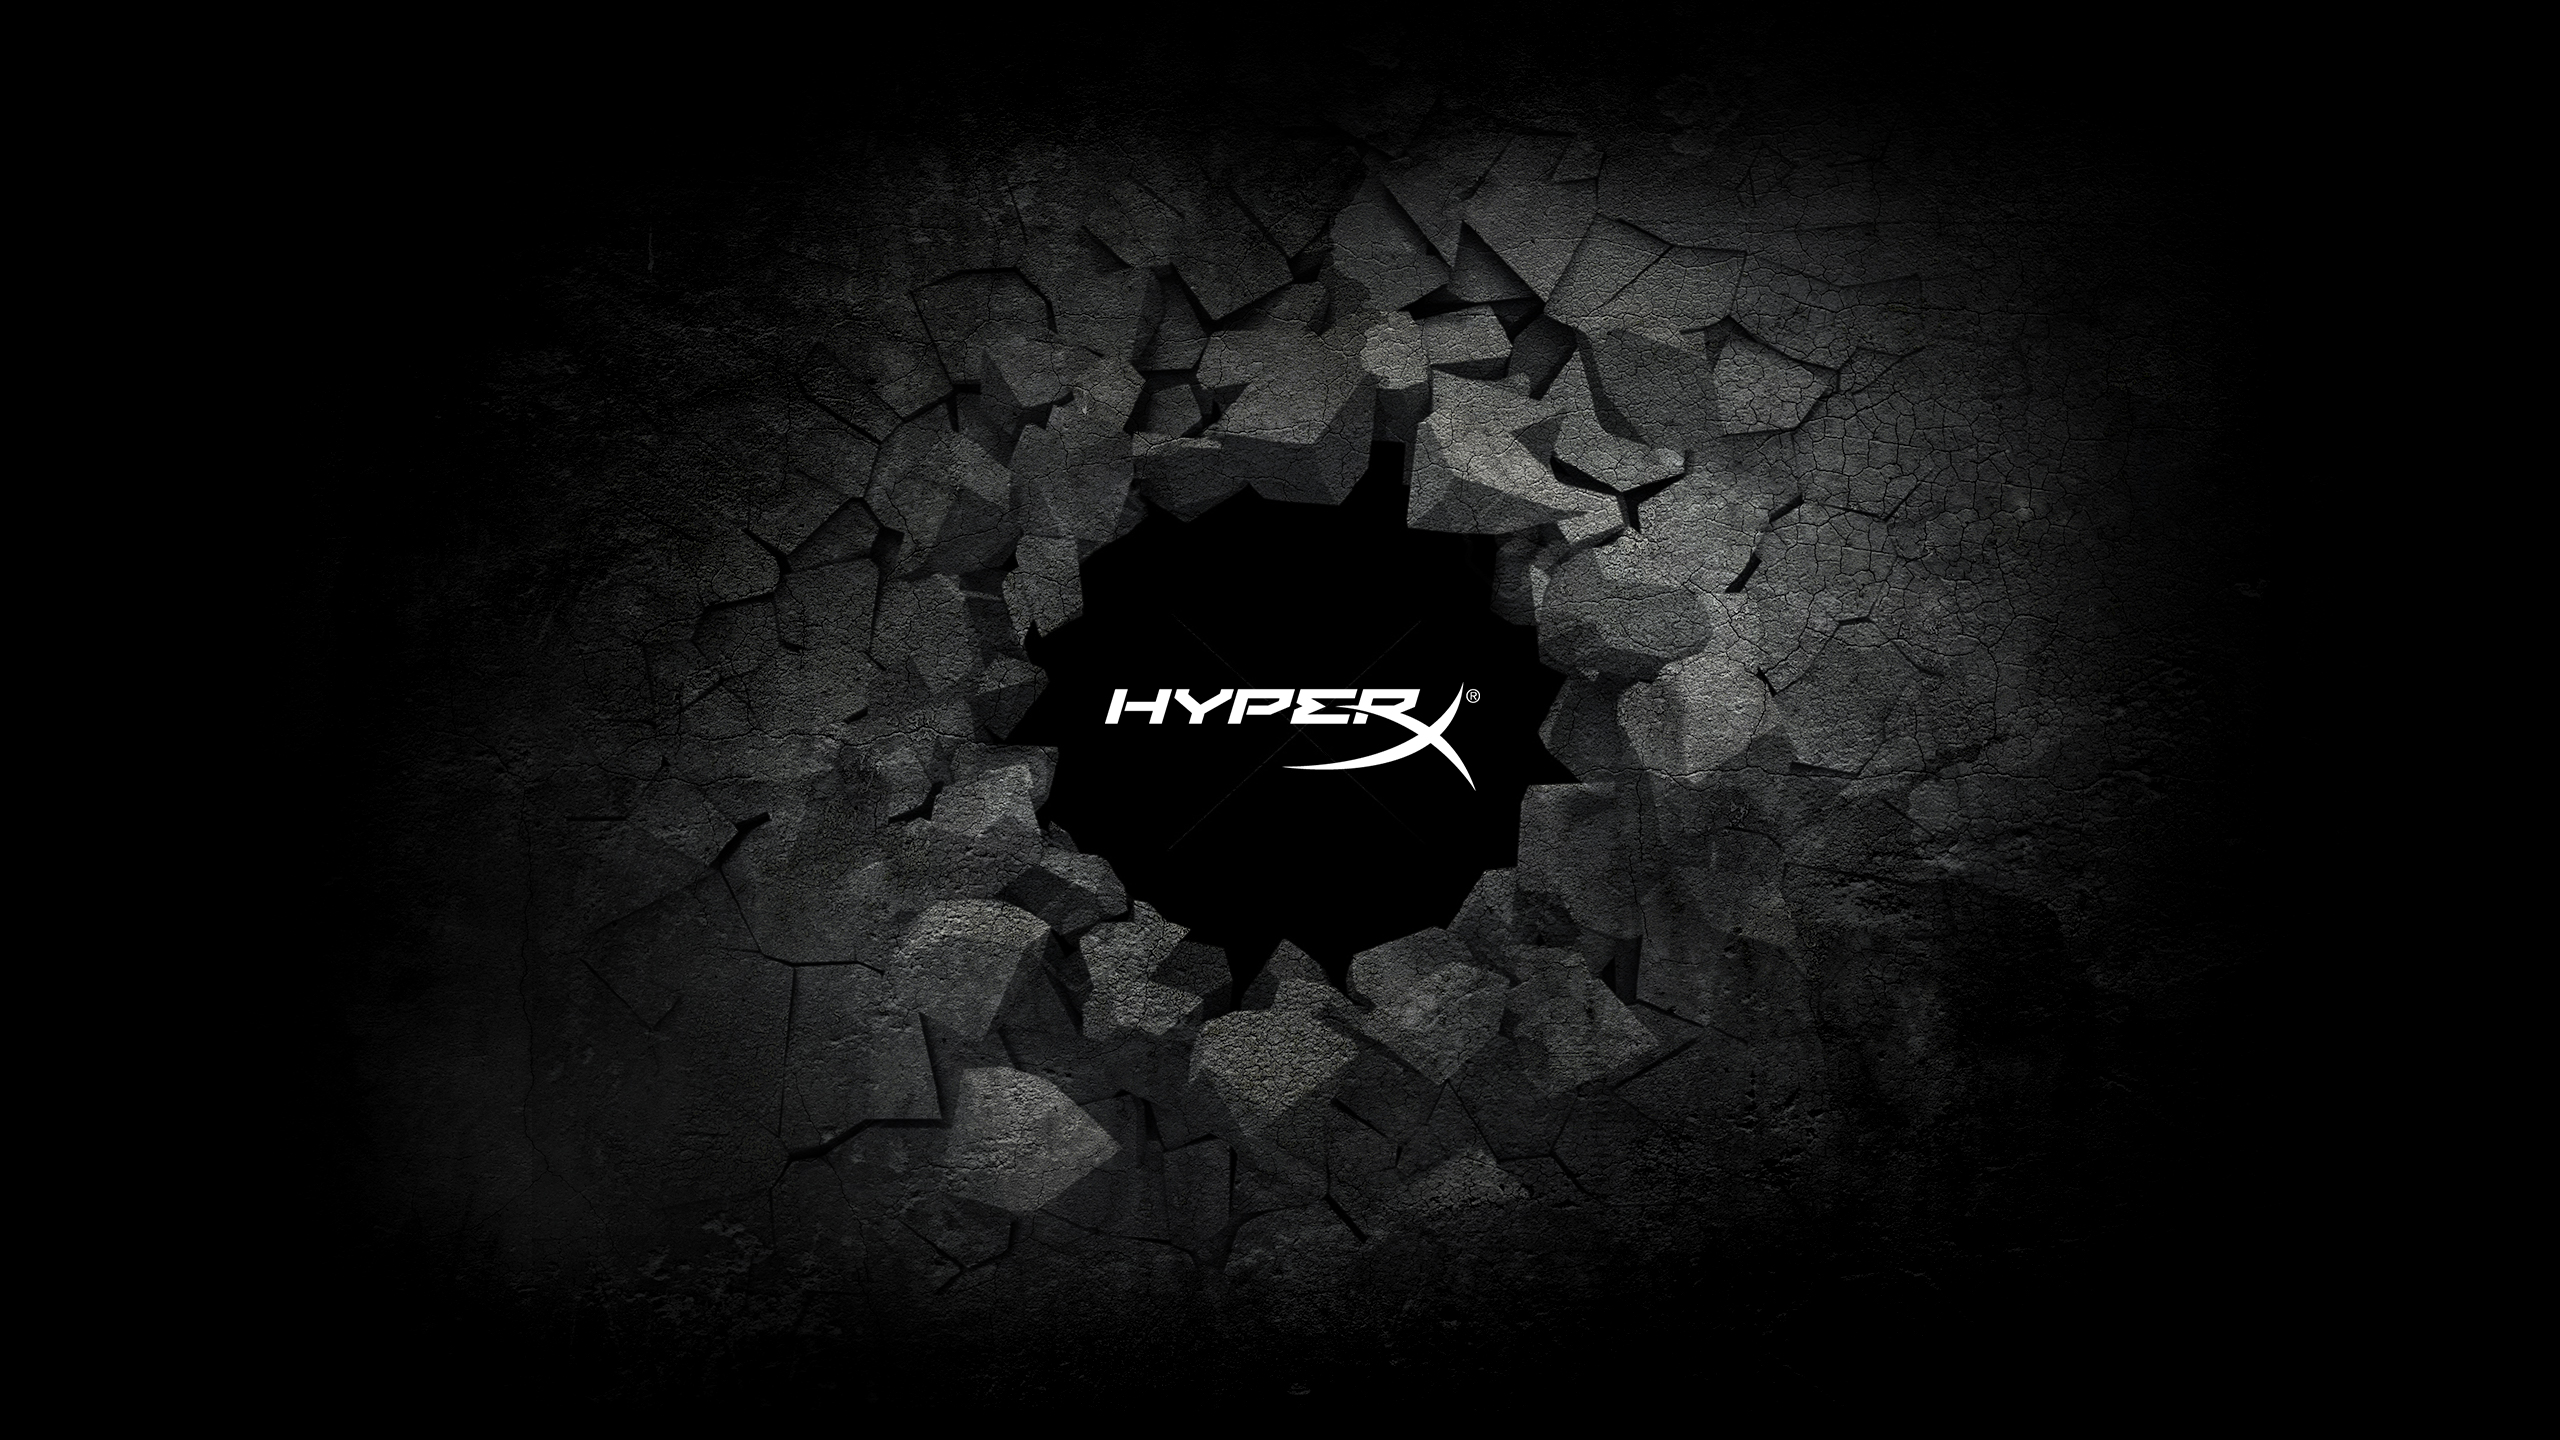 General 2560x1440 HyperX PC gaming logo simple background dark background Hewlett Packard